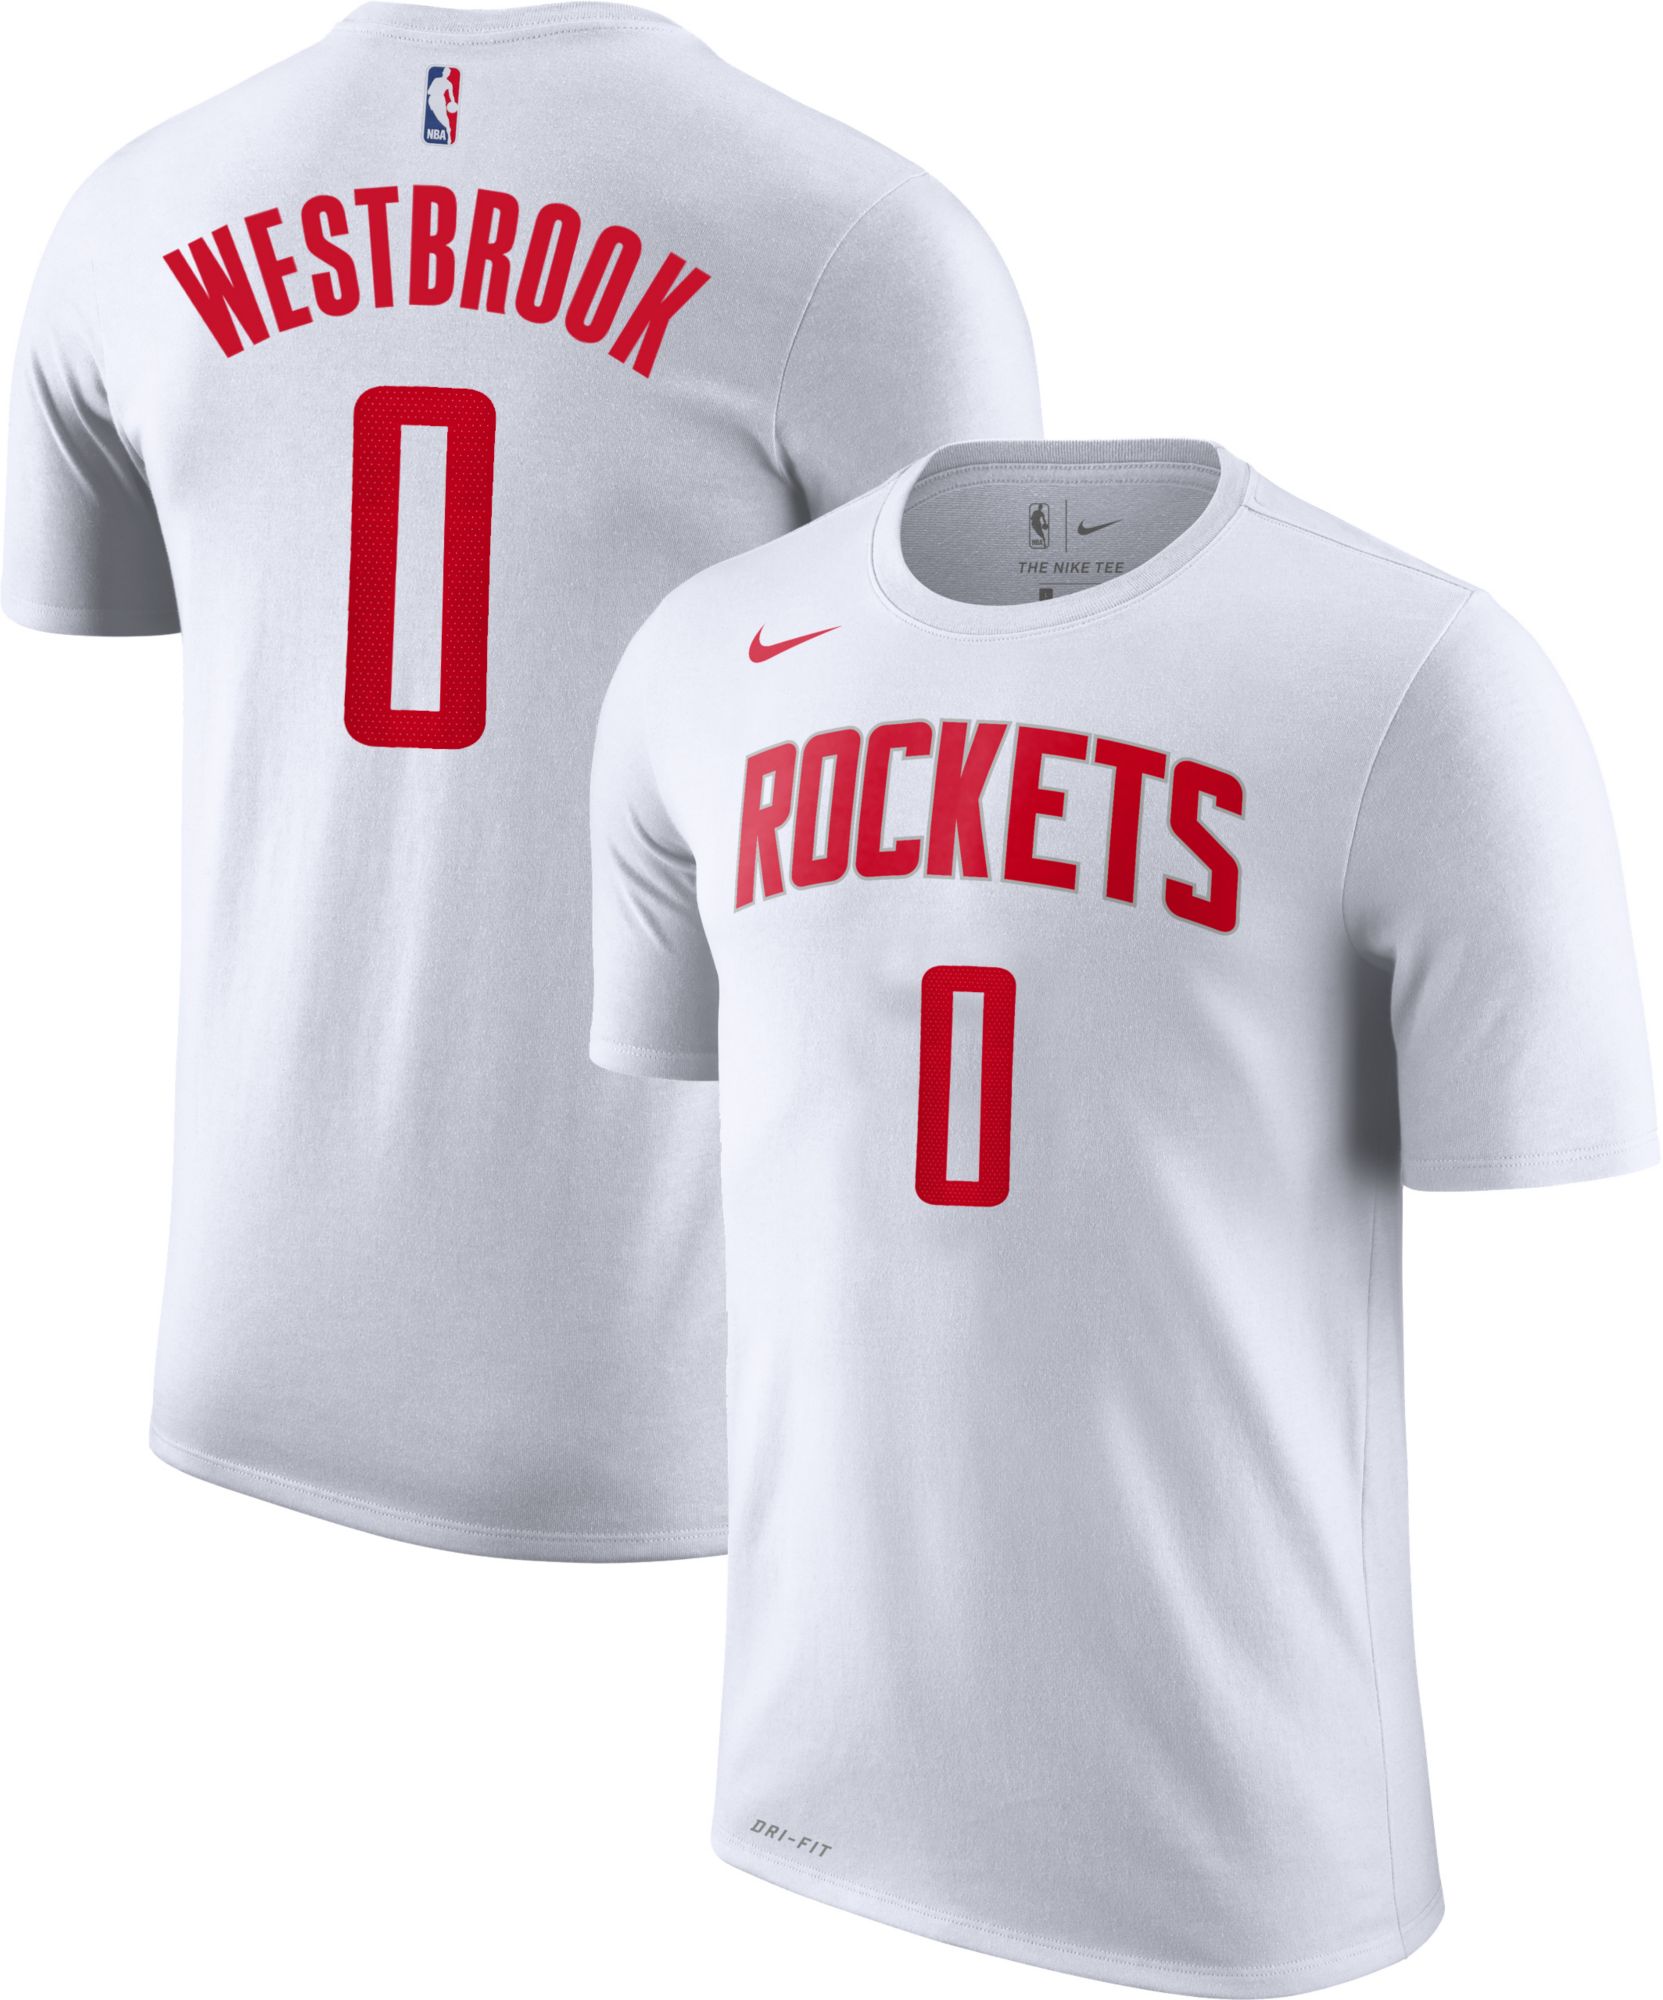 russell westbrook jersey rockets